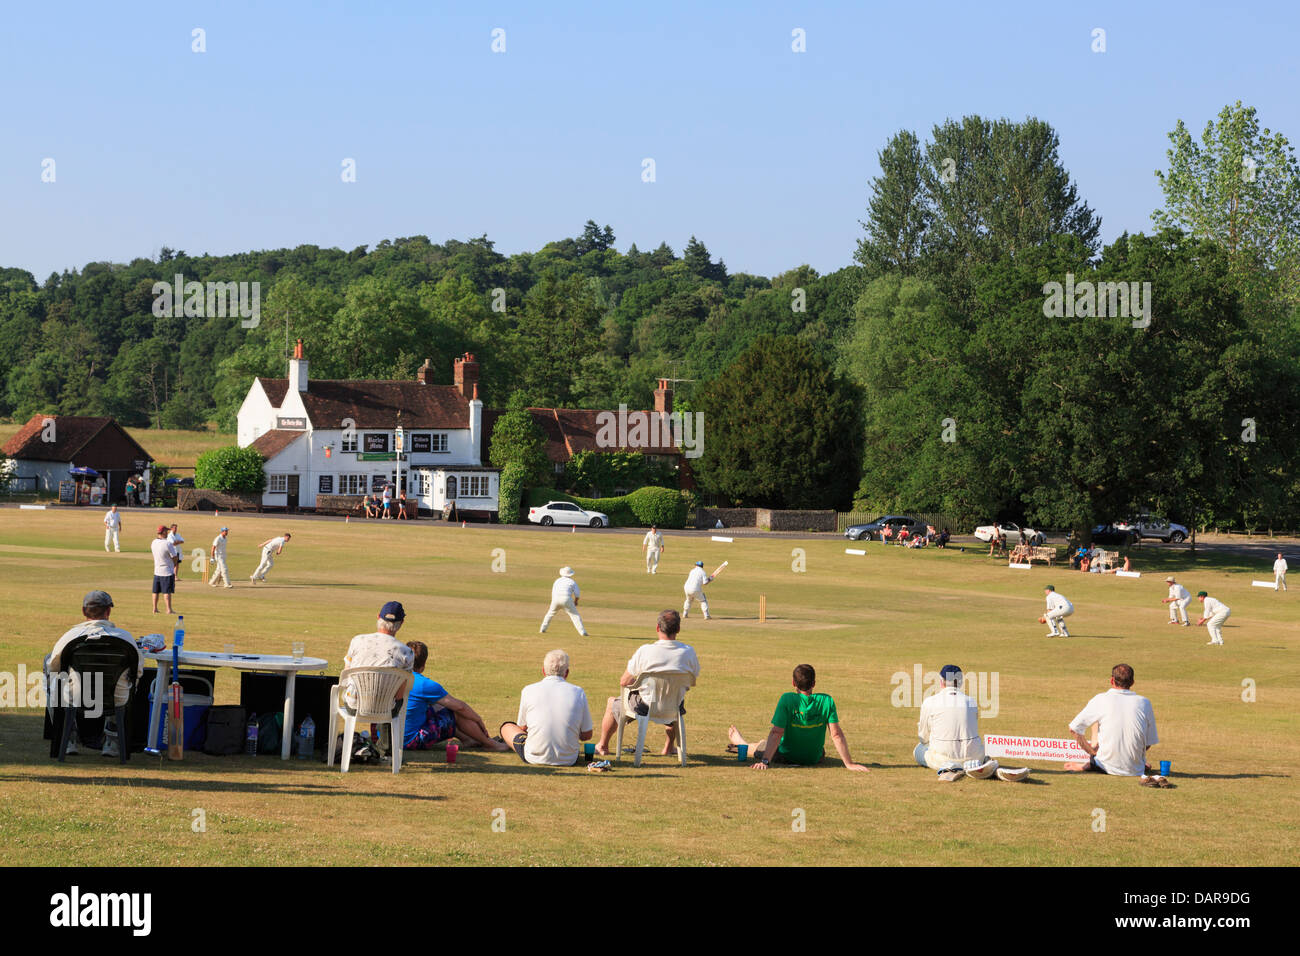 L'équipe locale de jouer un match de cricket sur la place du village en face de Barley Mow pub sur une soirée d'été. Tilford Surrey England UK Grande-Bretagne Banque D'Images